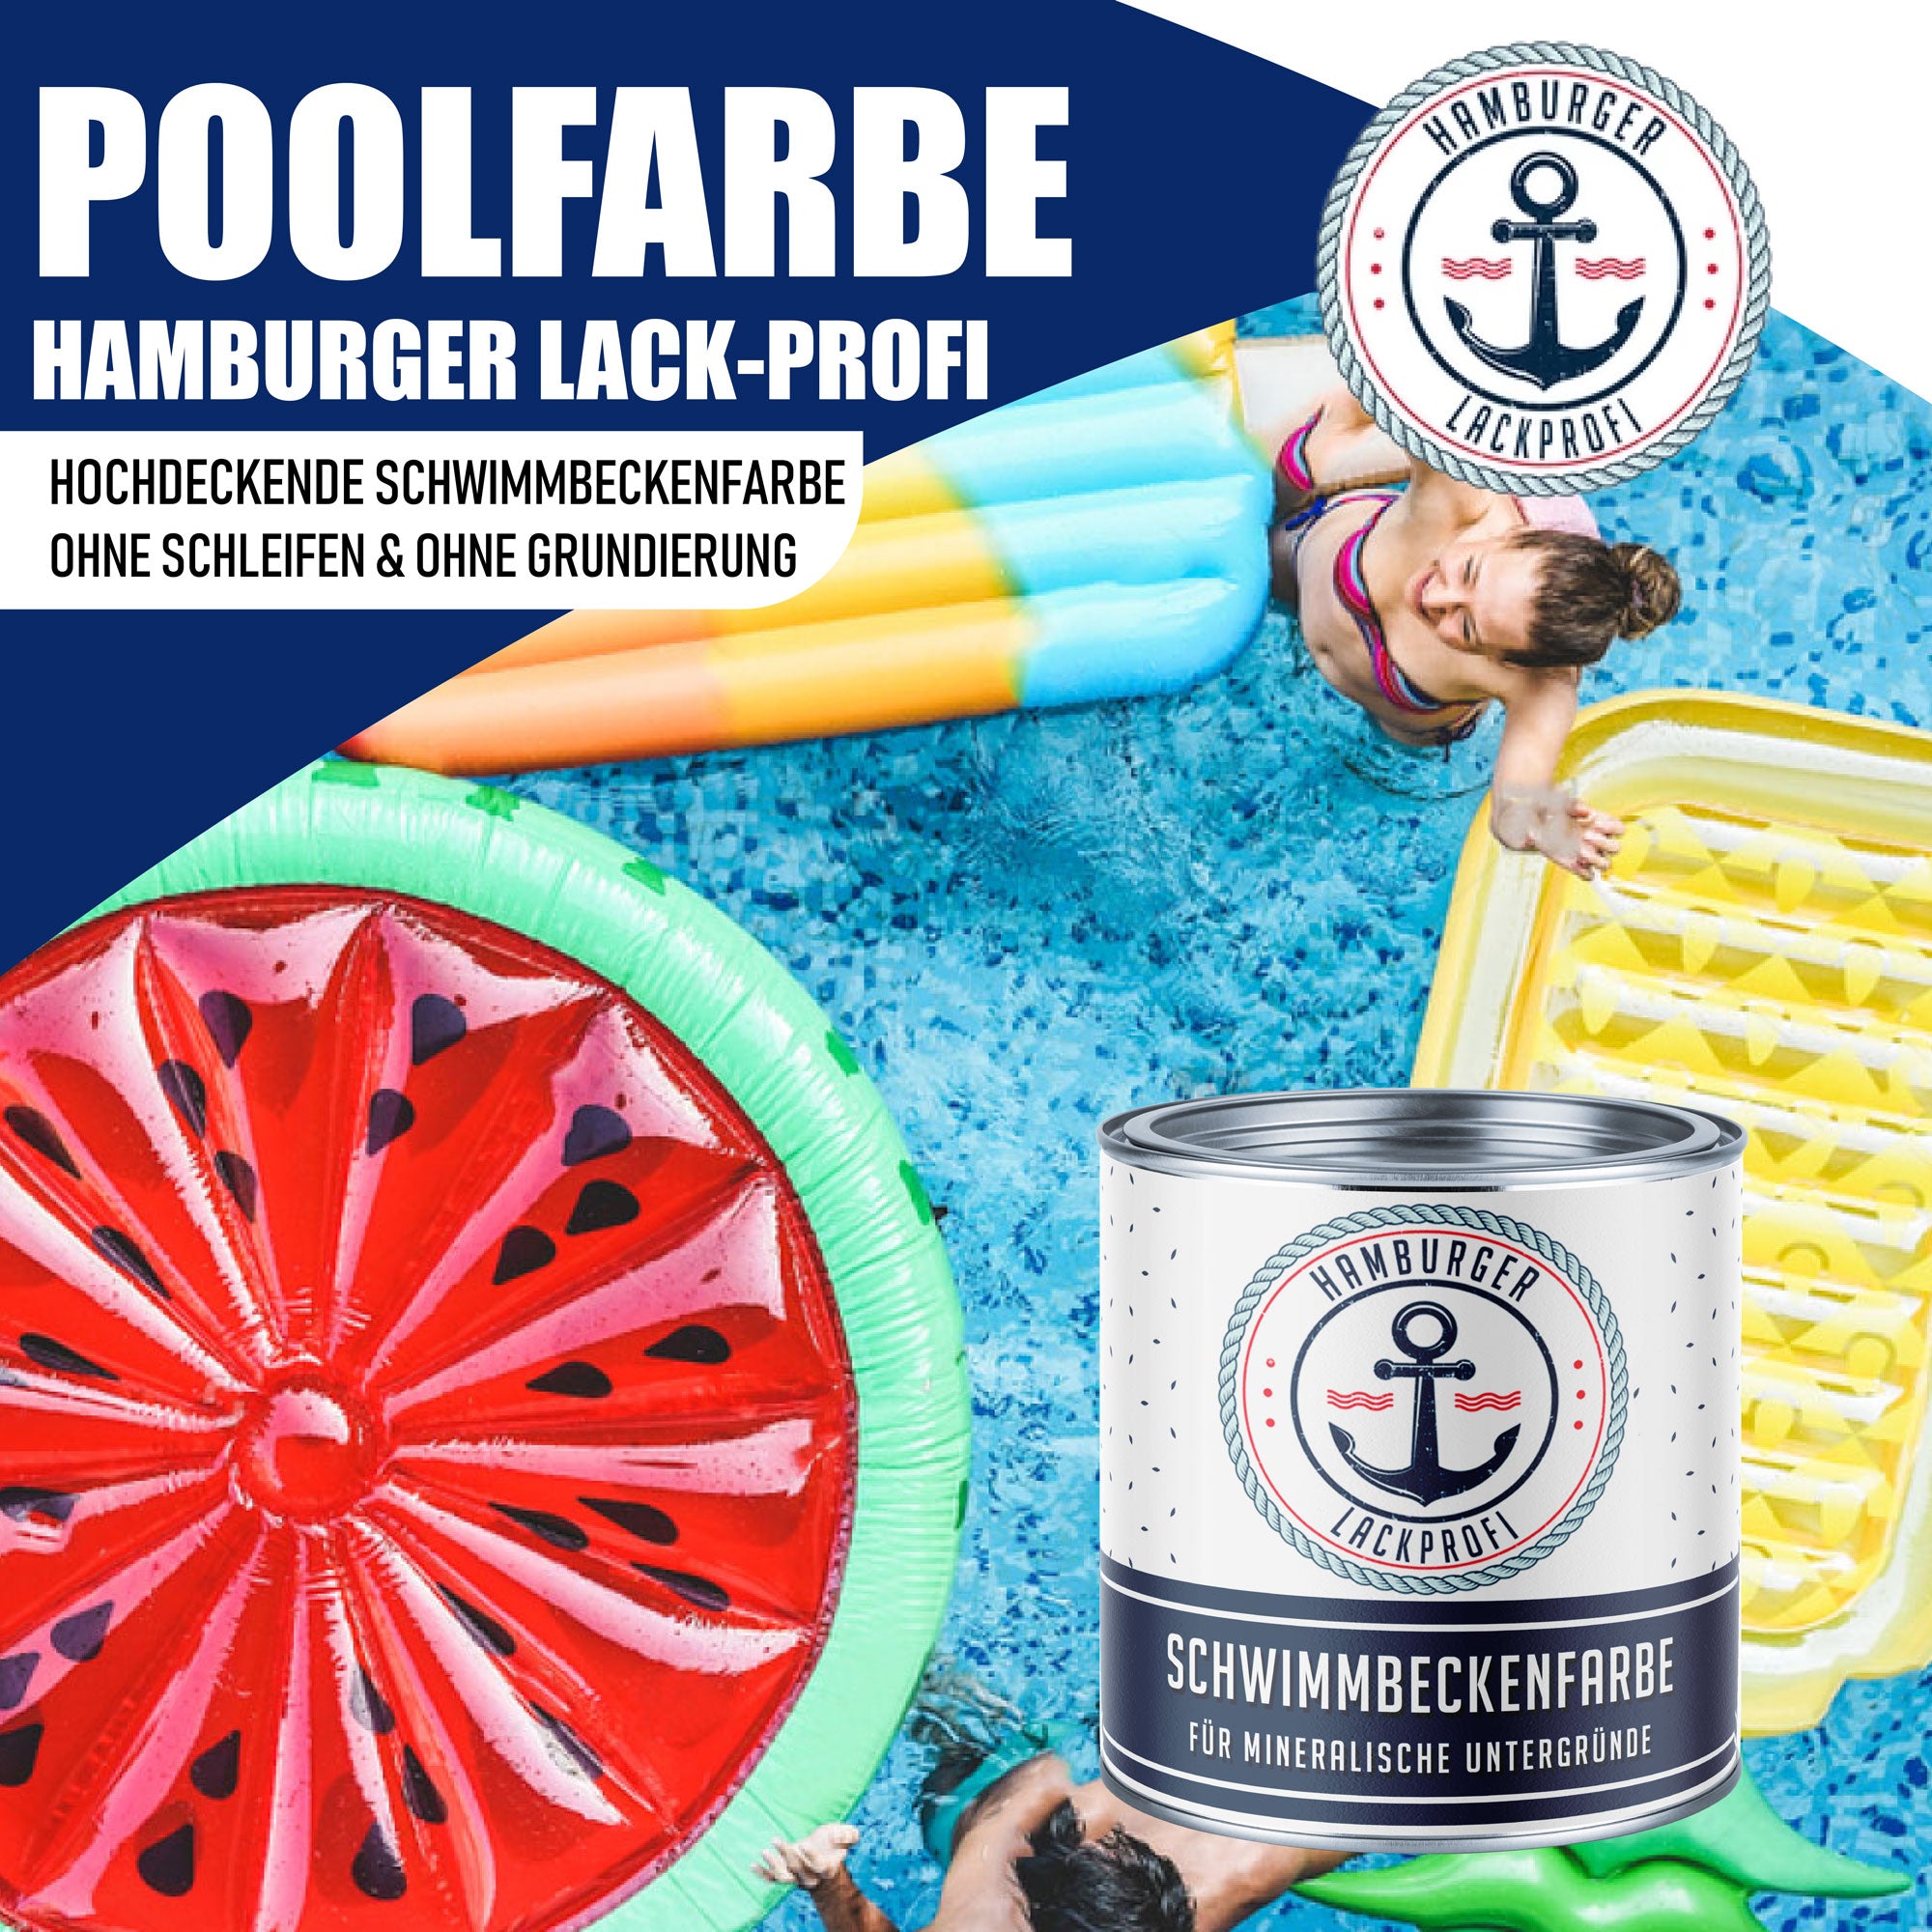 Hamburger Lack-Profi Schwimmbeckenfarbe Orangebraun RAL 8023 - hochdeckende Poolfarbe